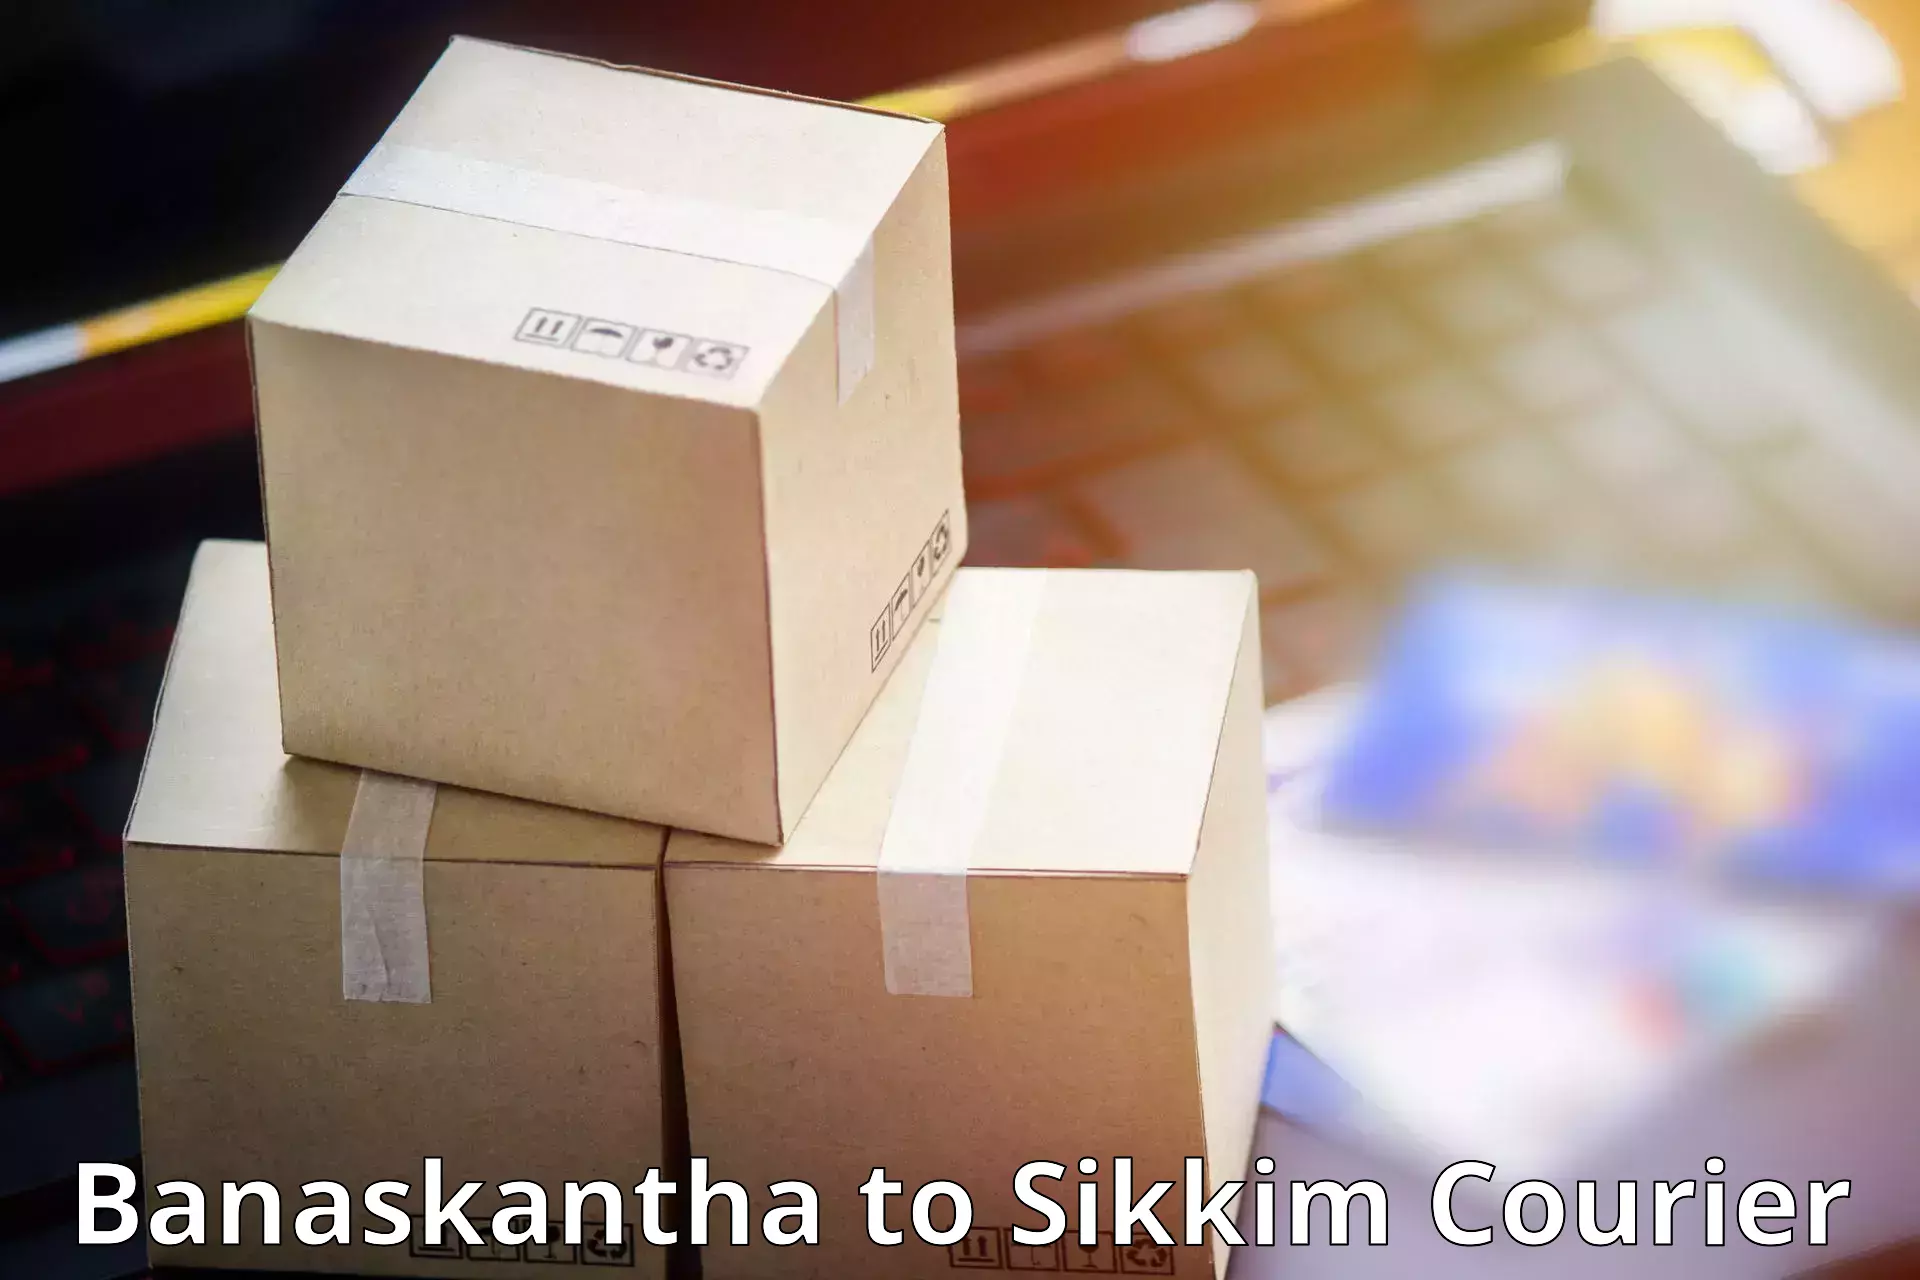 Reliable courier service Banaskantha to Gangtok